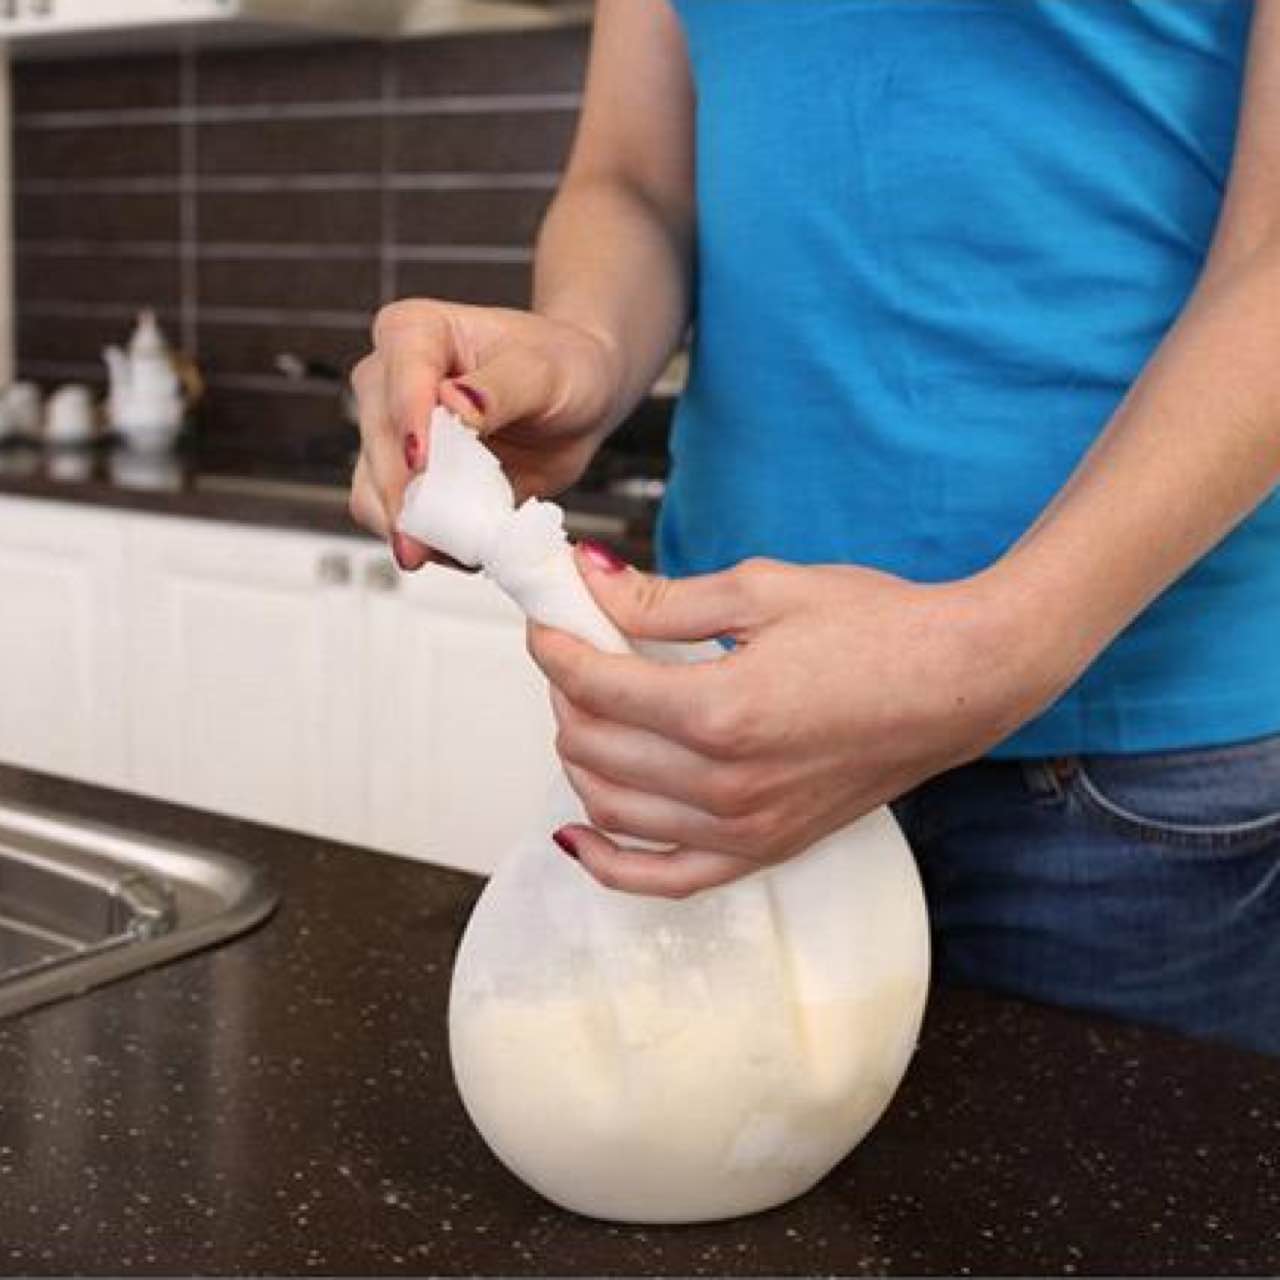 家居生活小用品实用韩国厨房用品用具懒人居家神器生活日用品硅胶和面袋